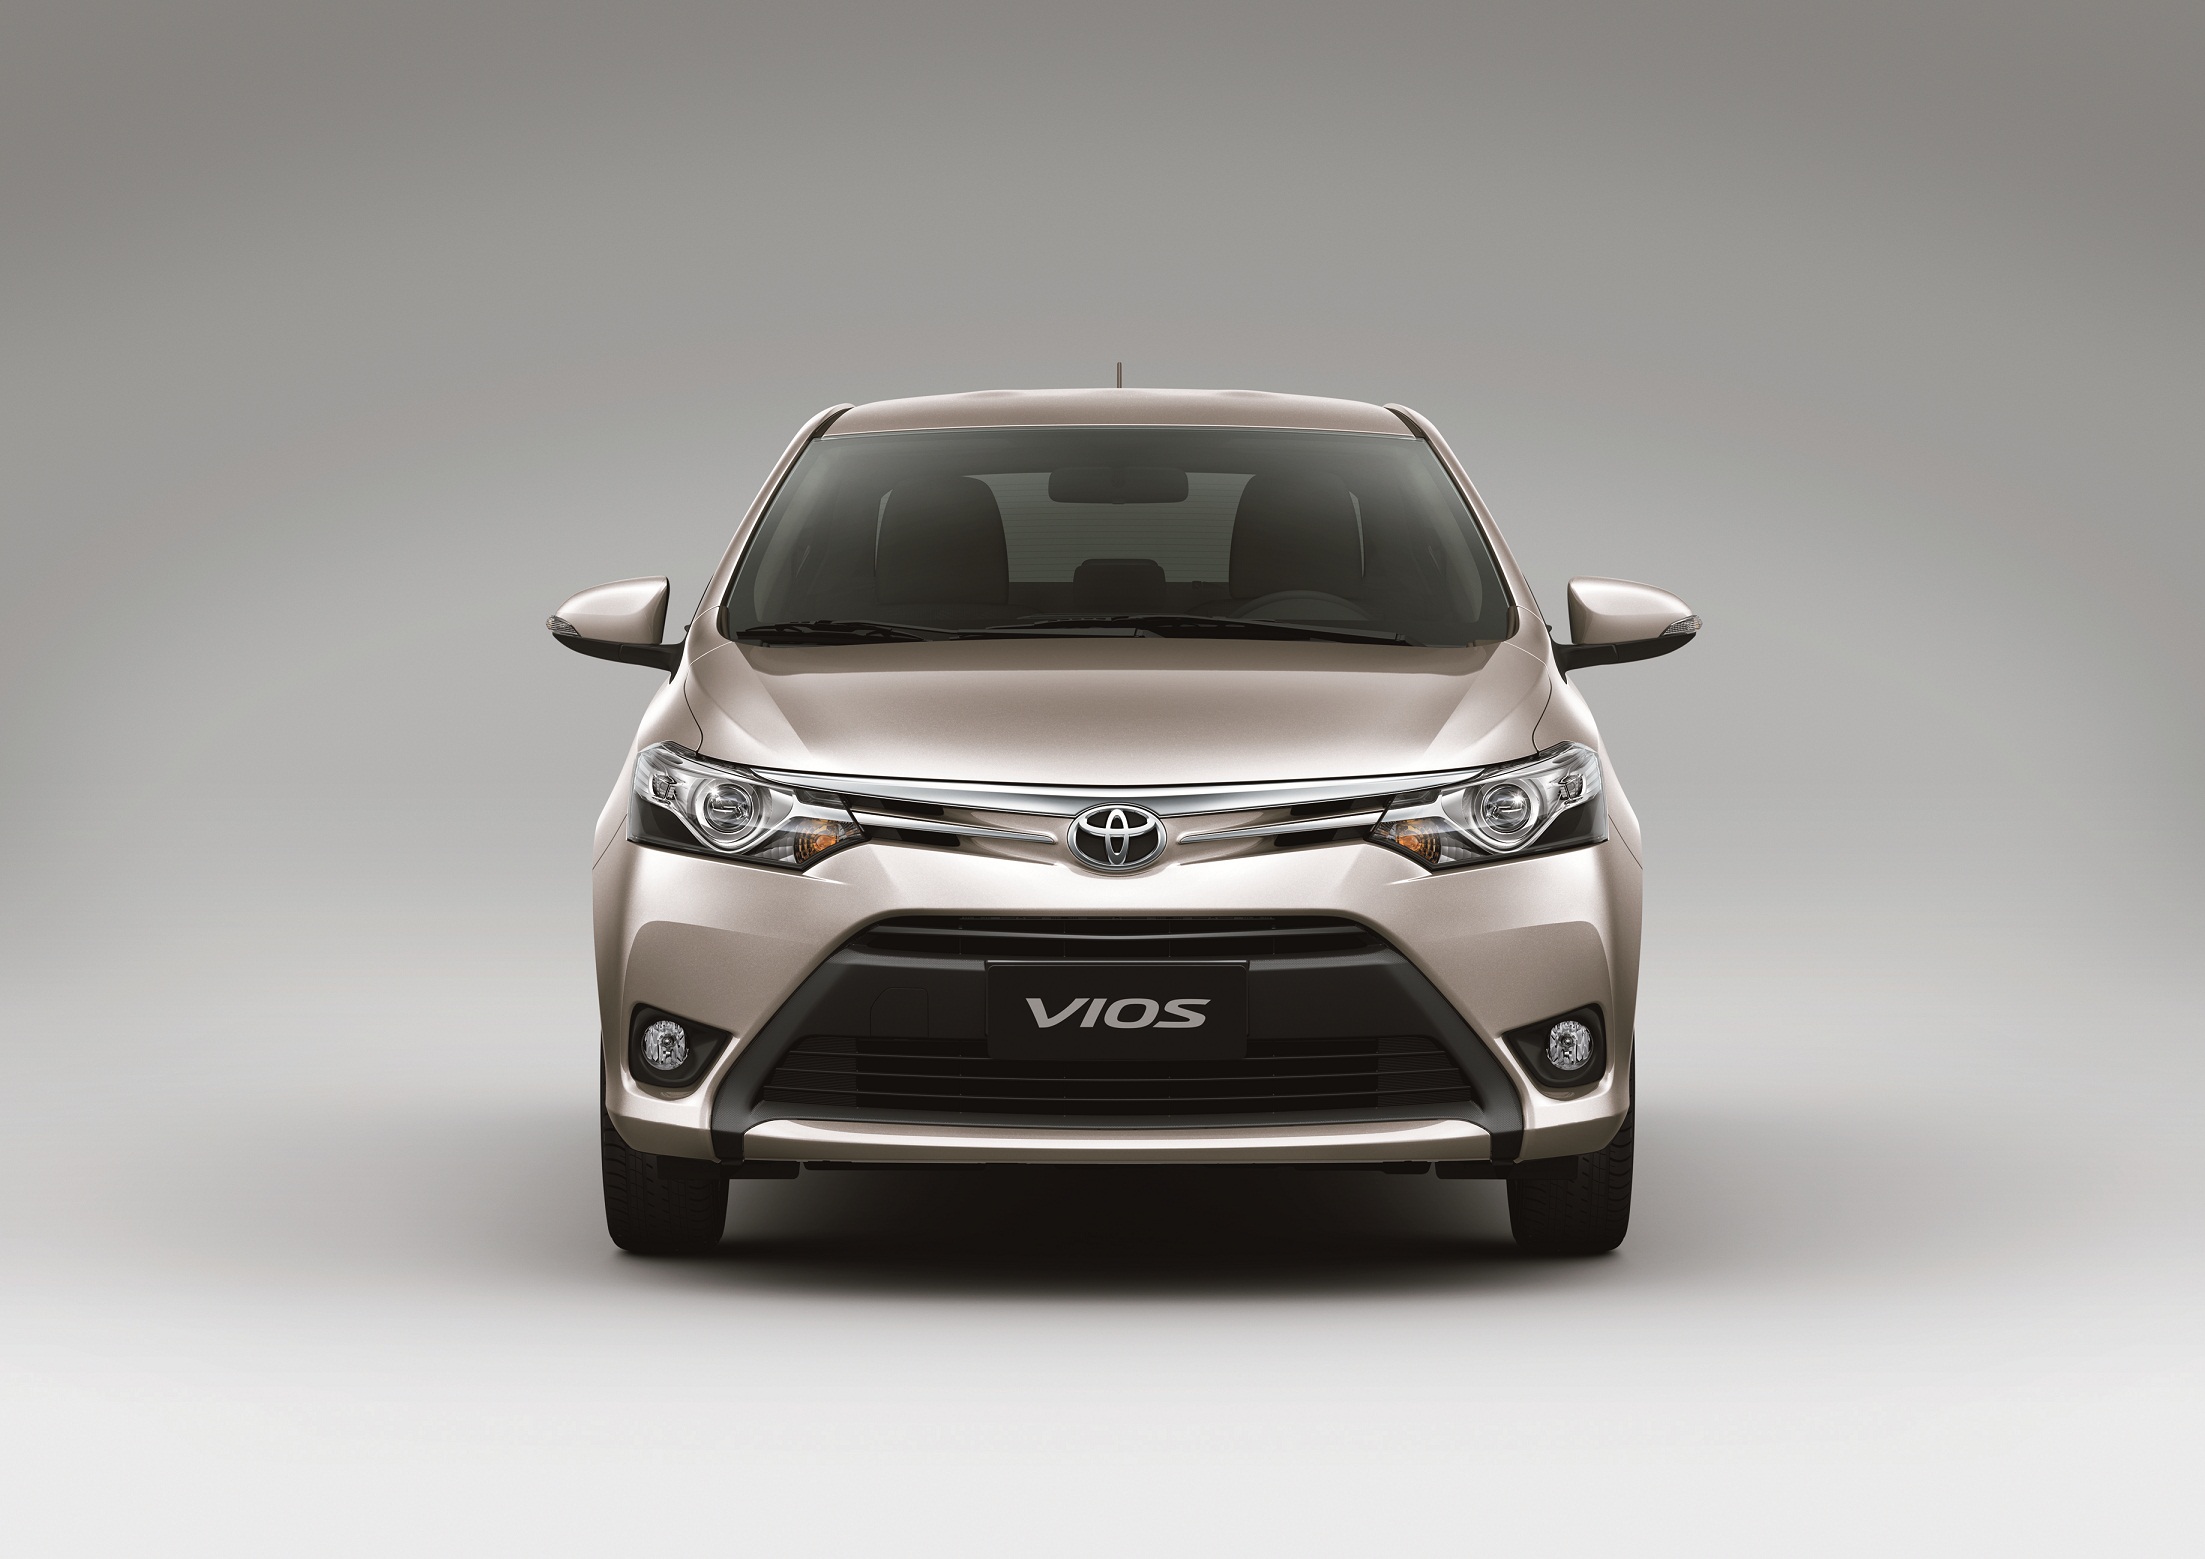 Mua bán xe Toyota Vios 2016 cũ chính chủ giá rẻ